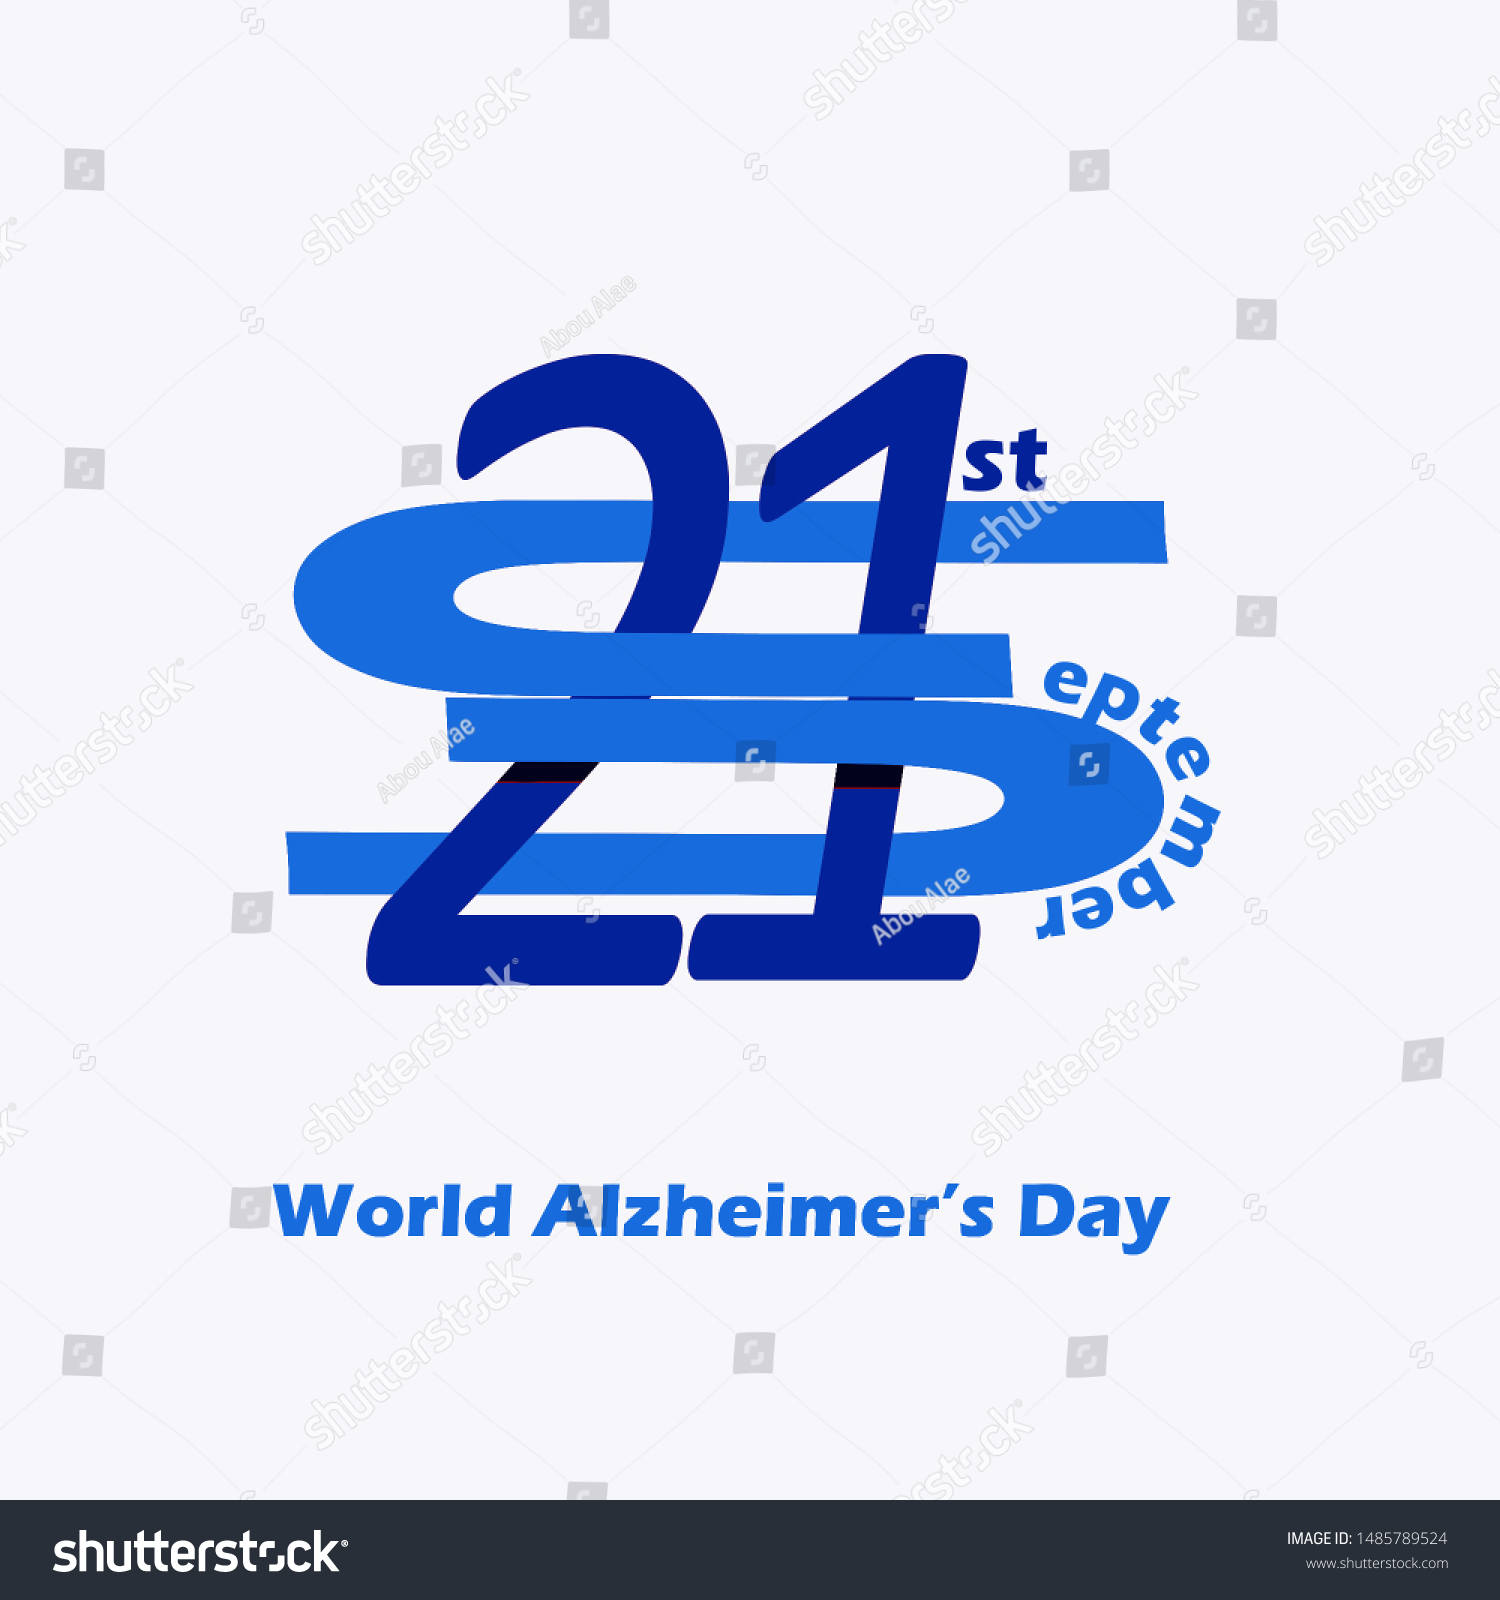 World Alzheimer's Day (September 21).
Line logo for Alzheimer's Day.illustration. #1485789524